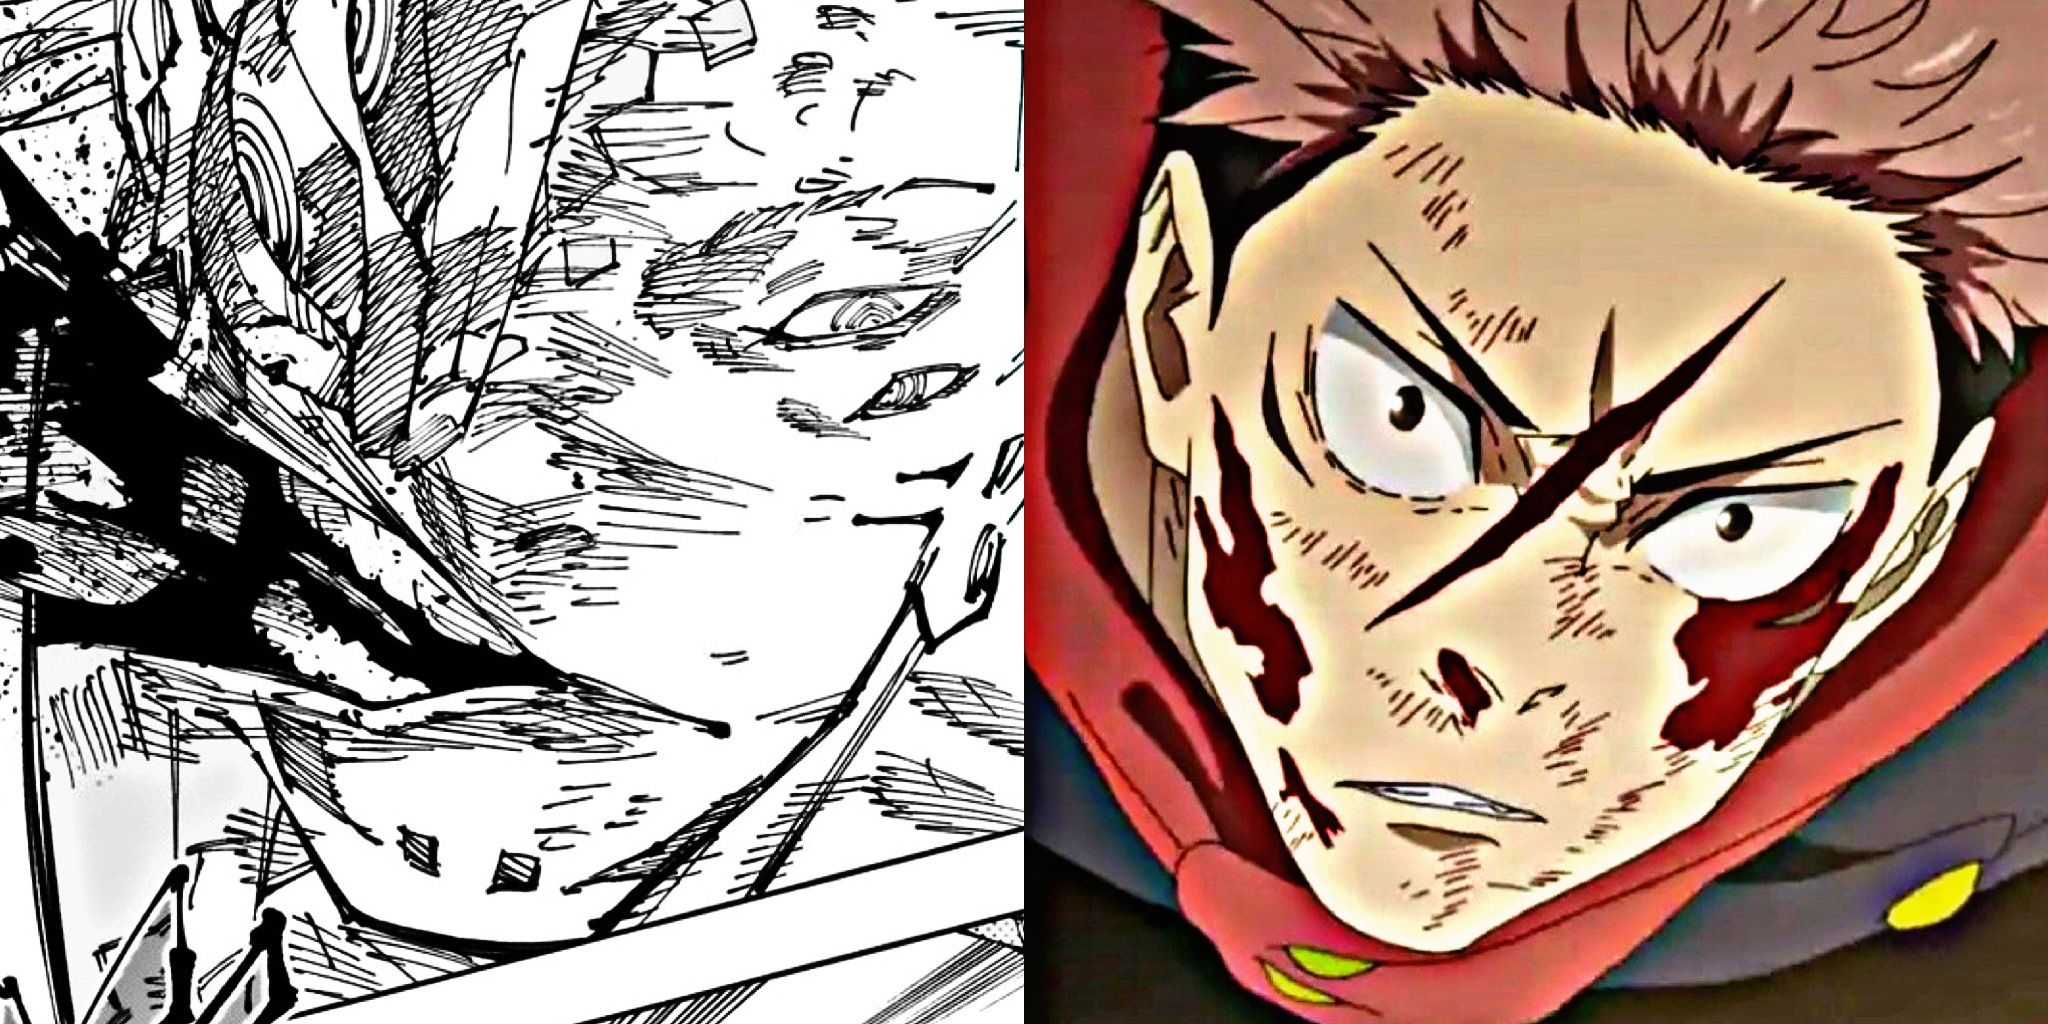 sukuna vs Yuji explosão de sangue jujutsu kaisen jjk